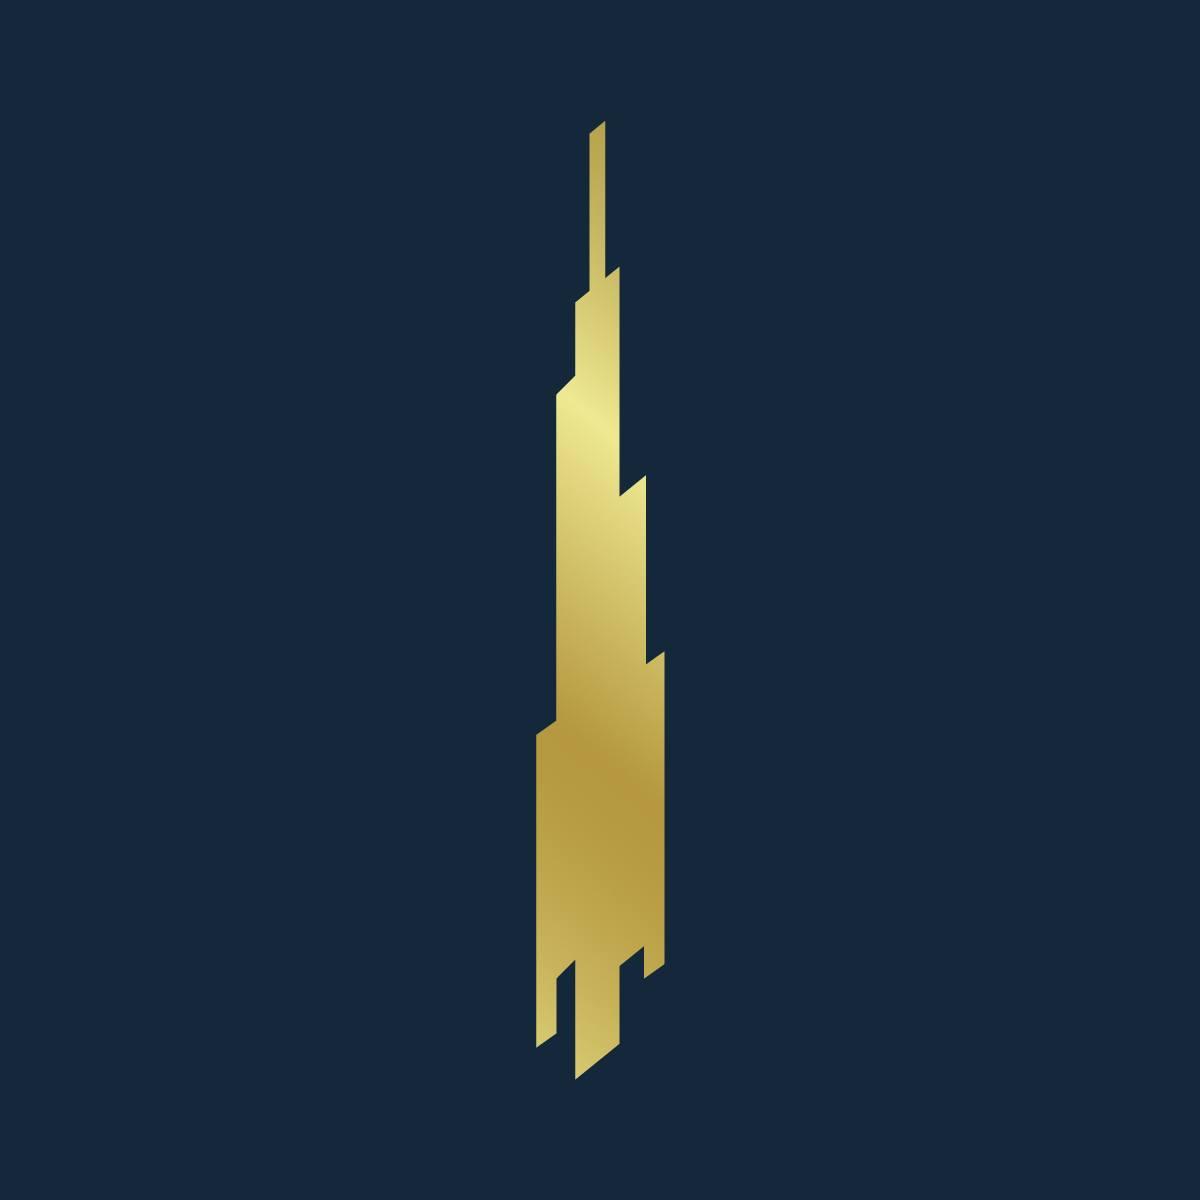 At.mosphere Burj Khalifa